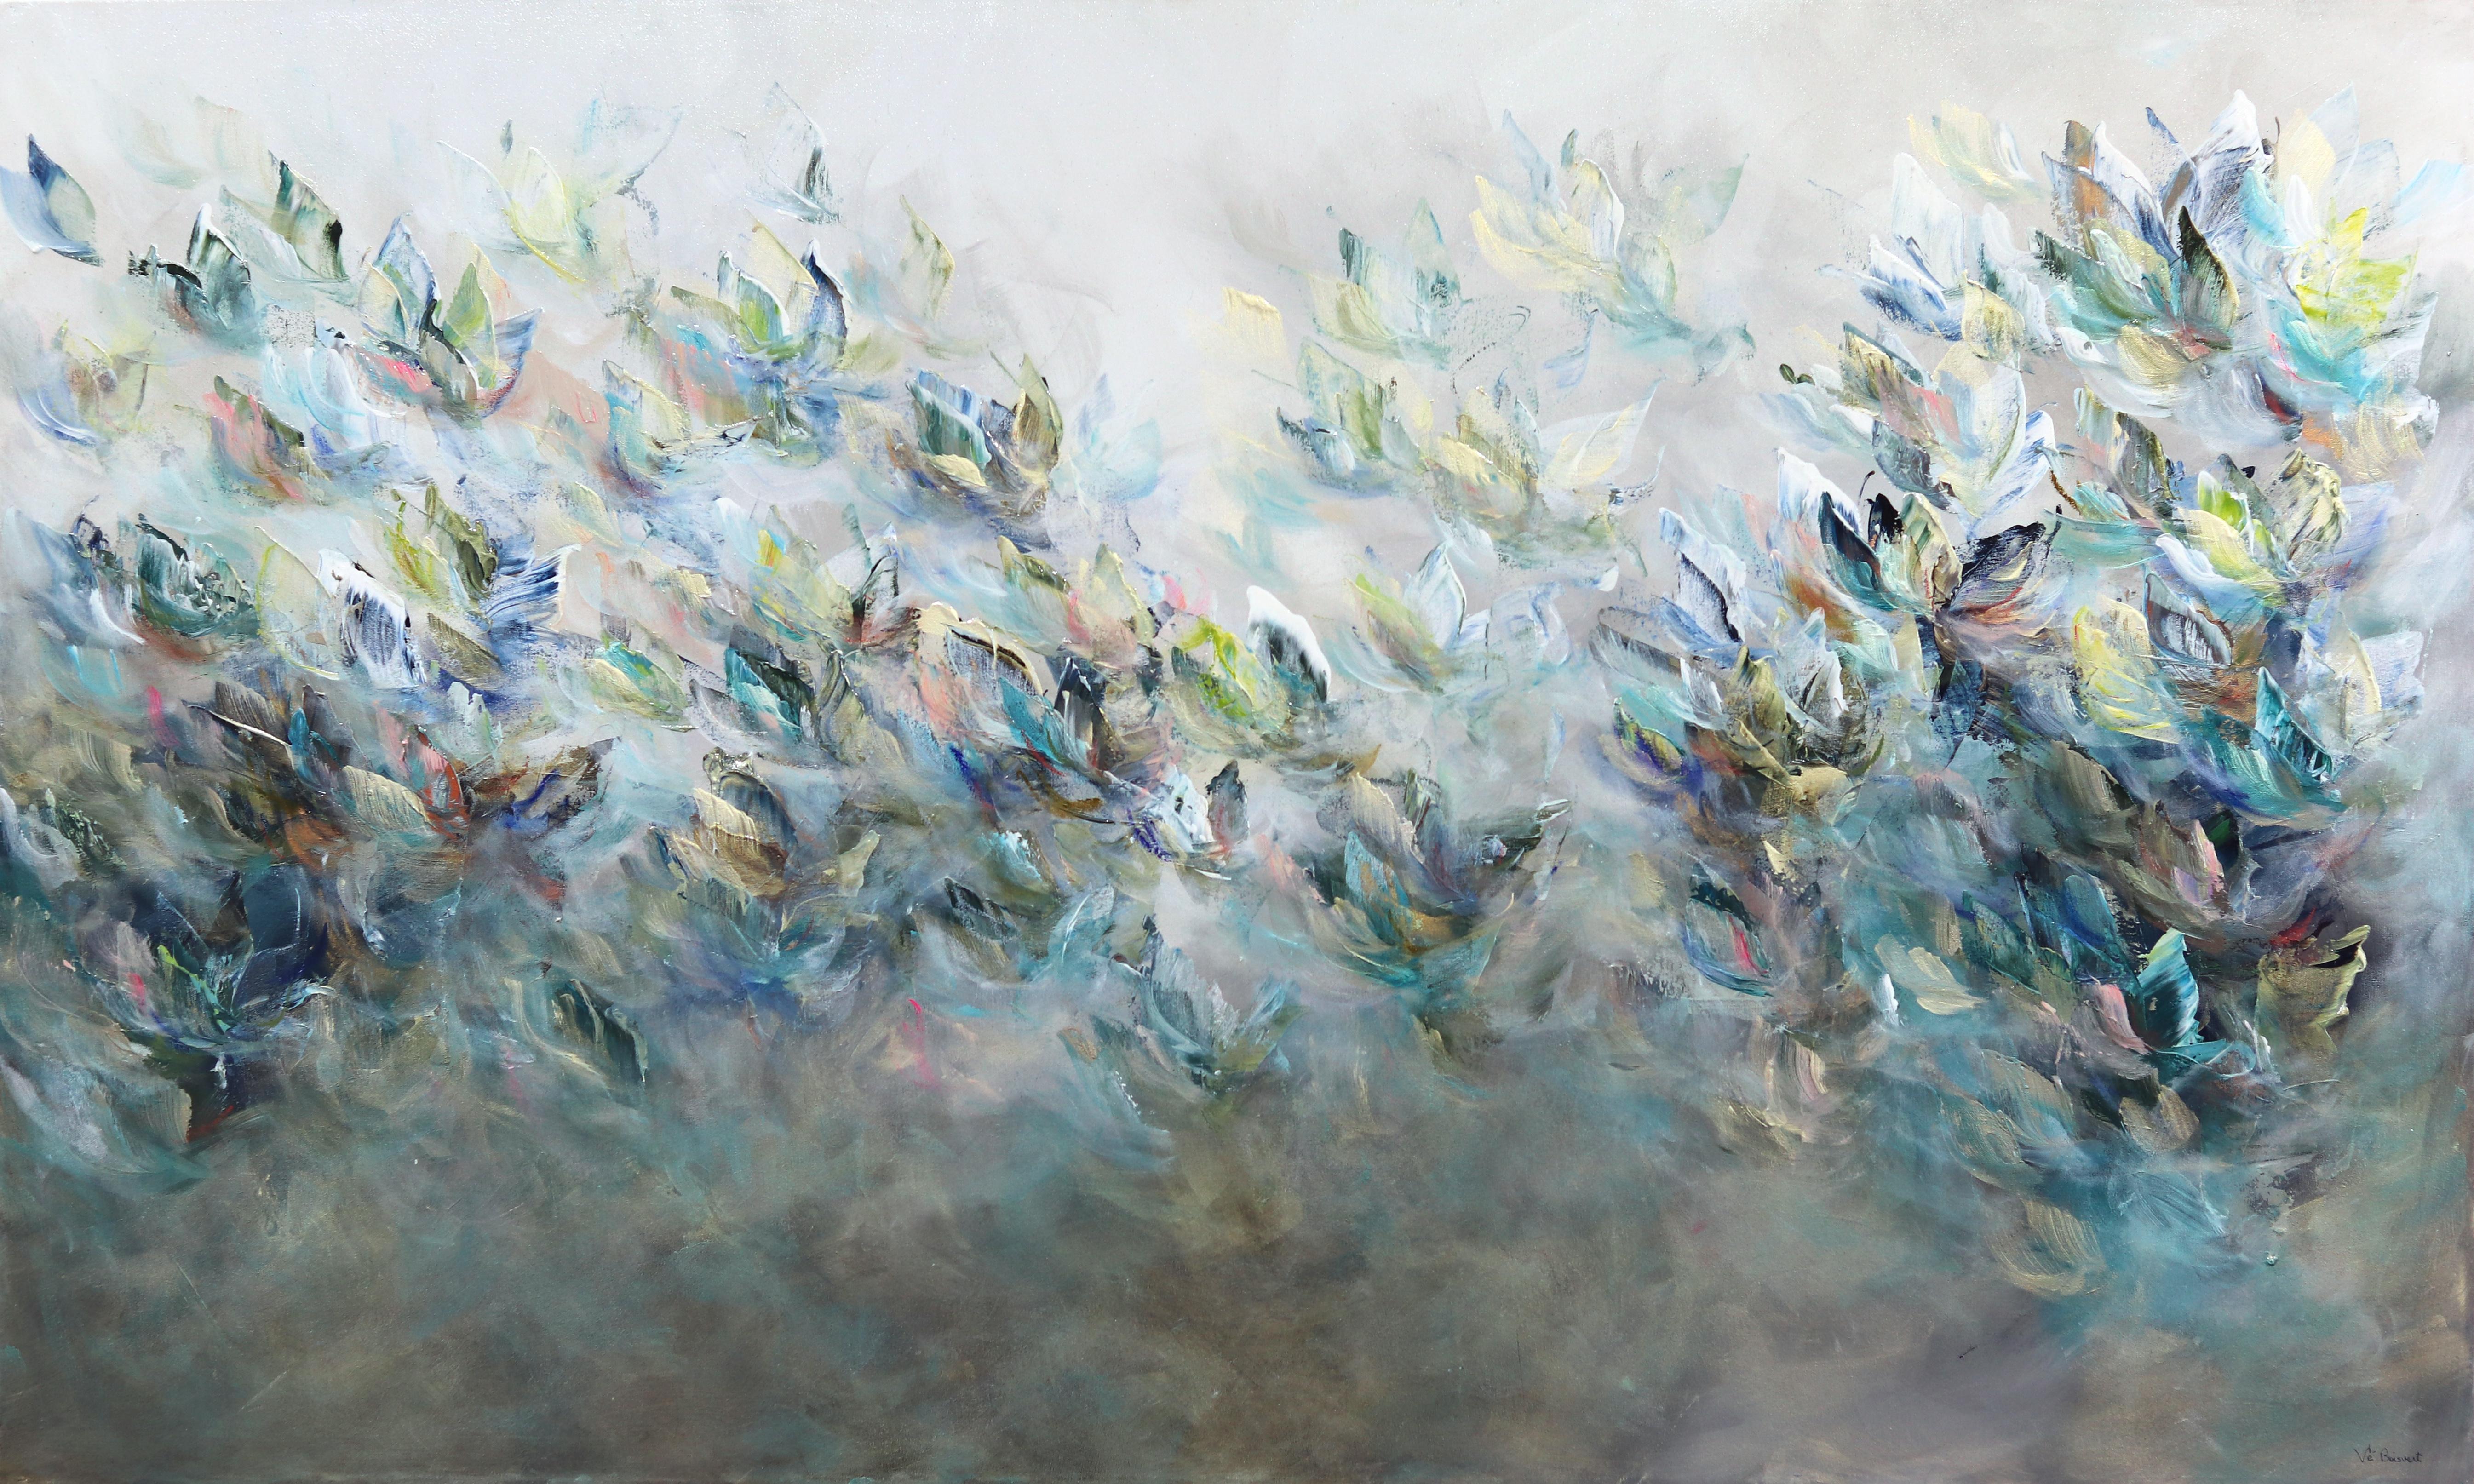 Vè Boisvert Abstract Painting - Une Caresse de L'Universe - Soft Abstract Floral Landscape Painting